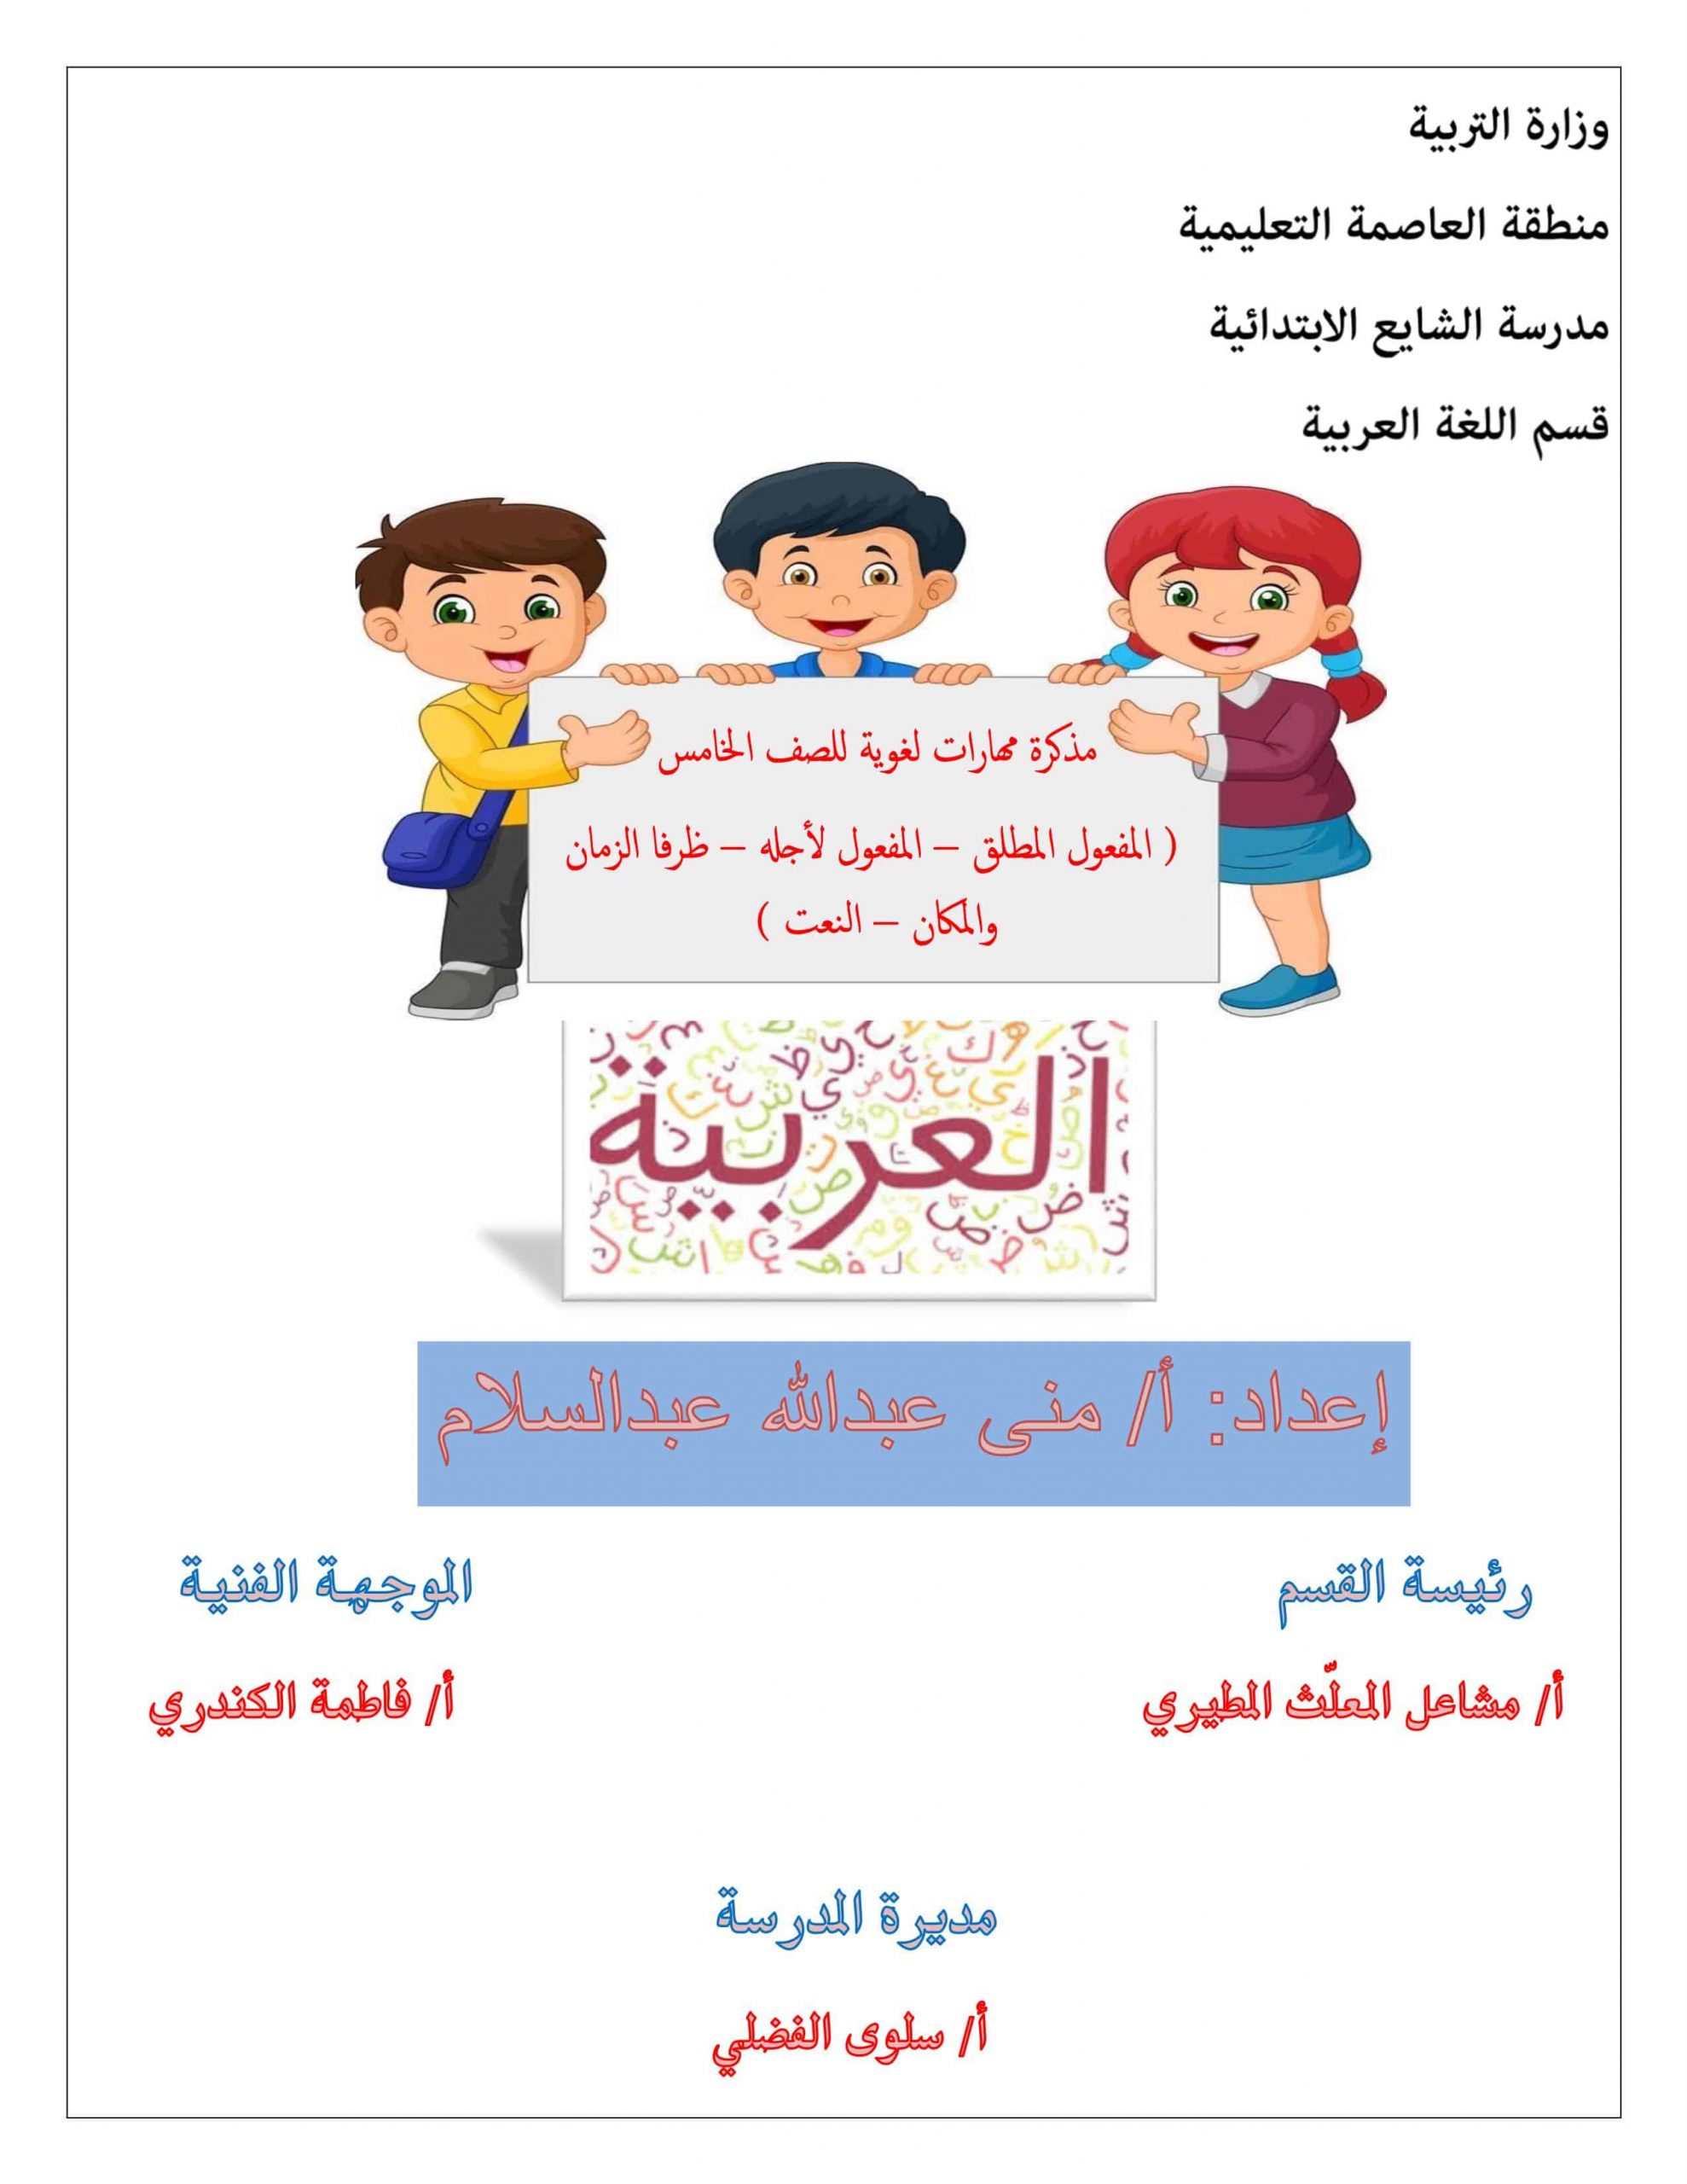 مذكرة مهارات لغوية الفصل الدراسي الثاني الصف الخامس مادة اللغة العربية 